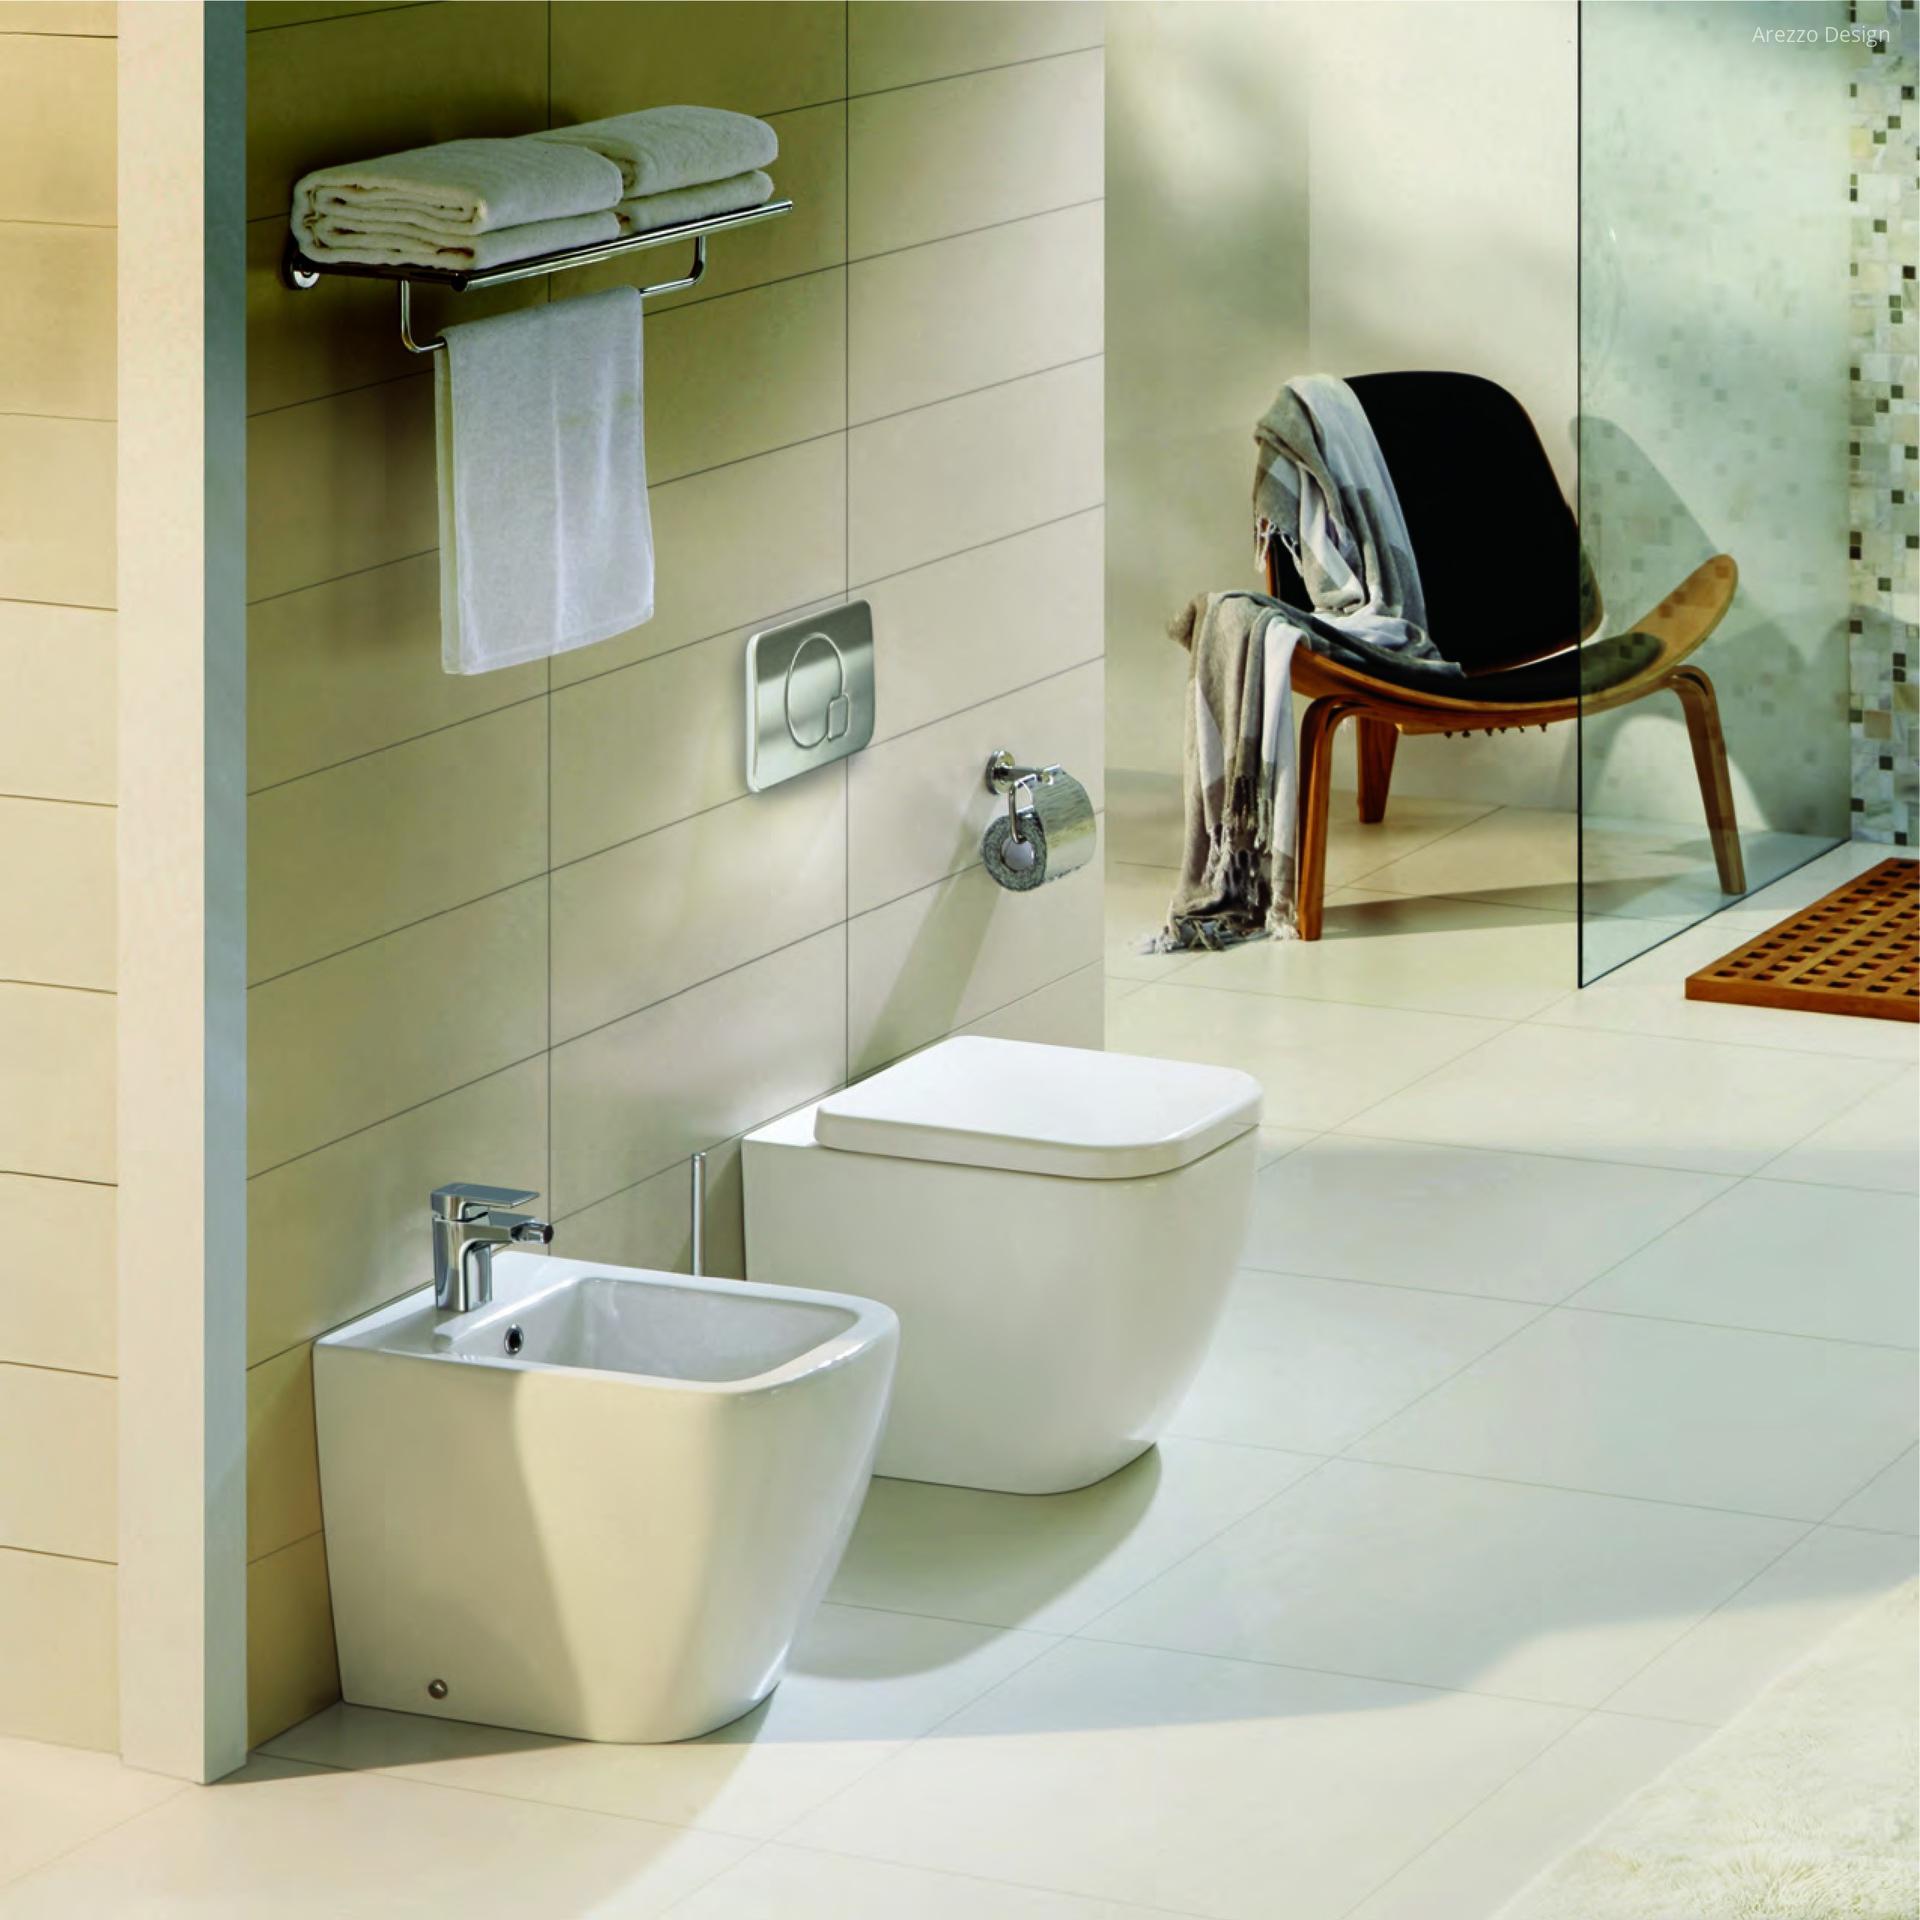 Wc és bidé - fürdő / WC ötlet, modern stílusban